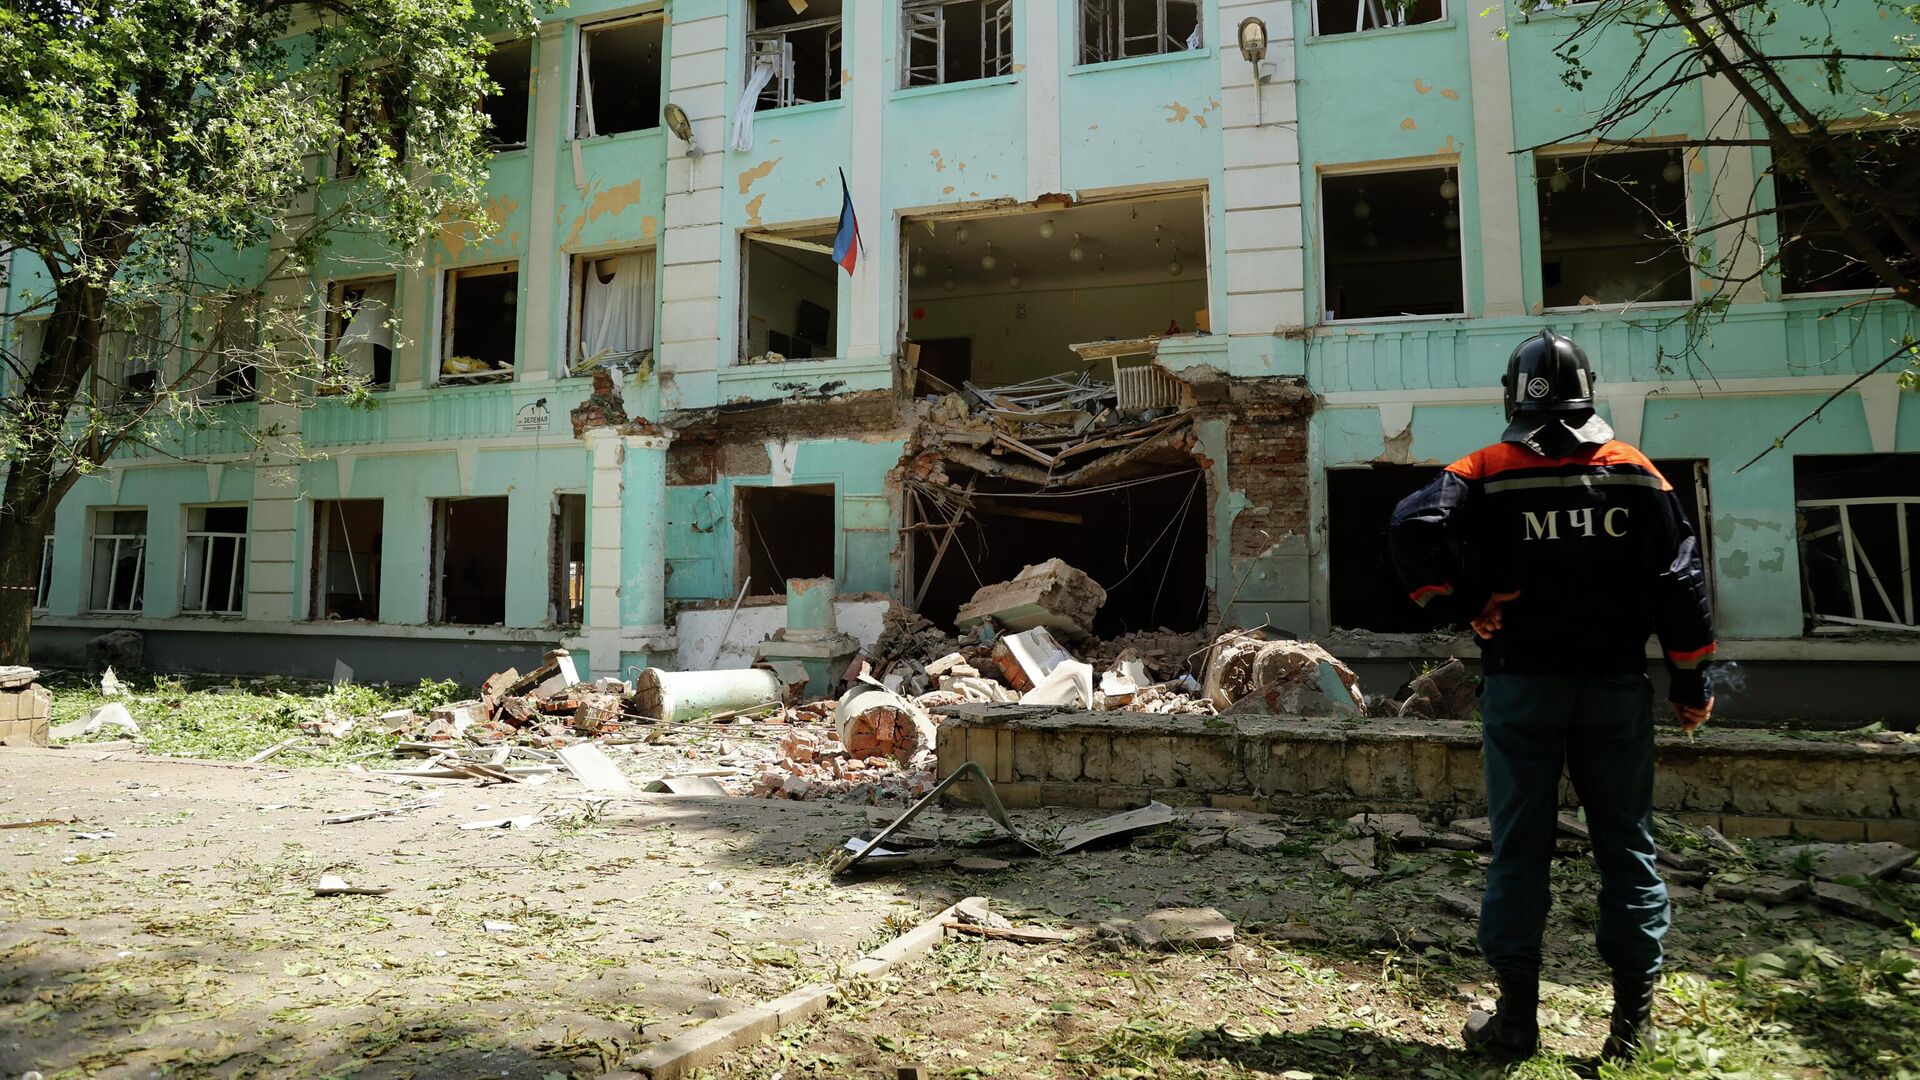 Разрушенная школа №22 в Донецке, которая подверглась обстрелу со стороны украинских военных. 30 мая 2022 - РИА Новости, 1920, 30.05.2022